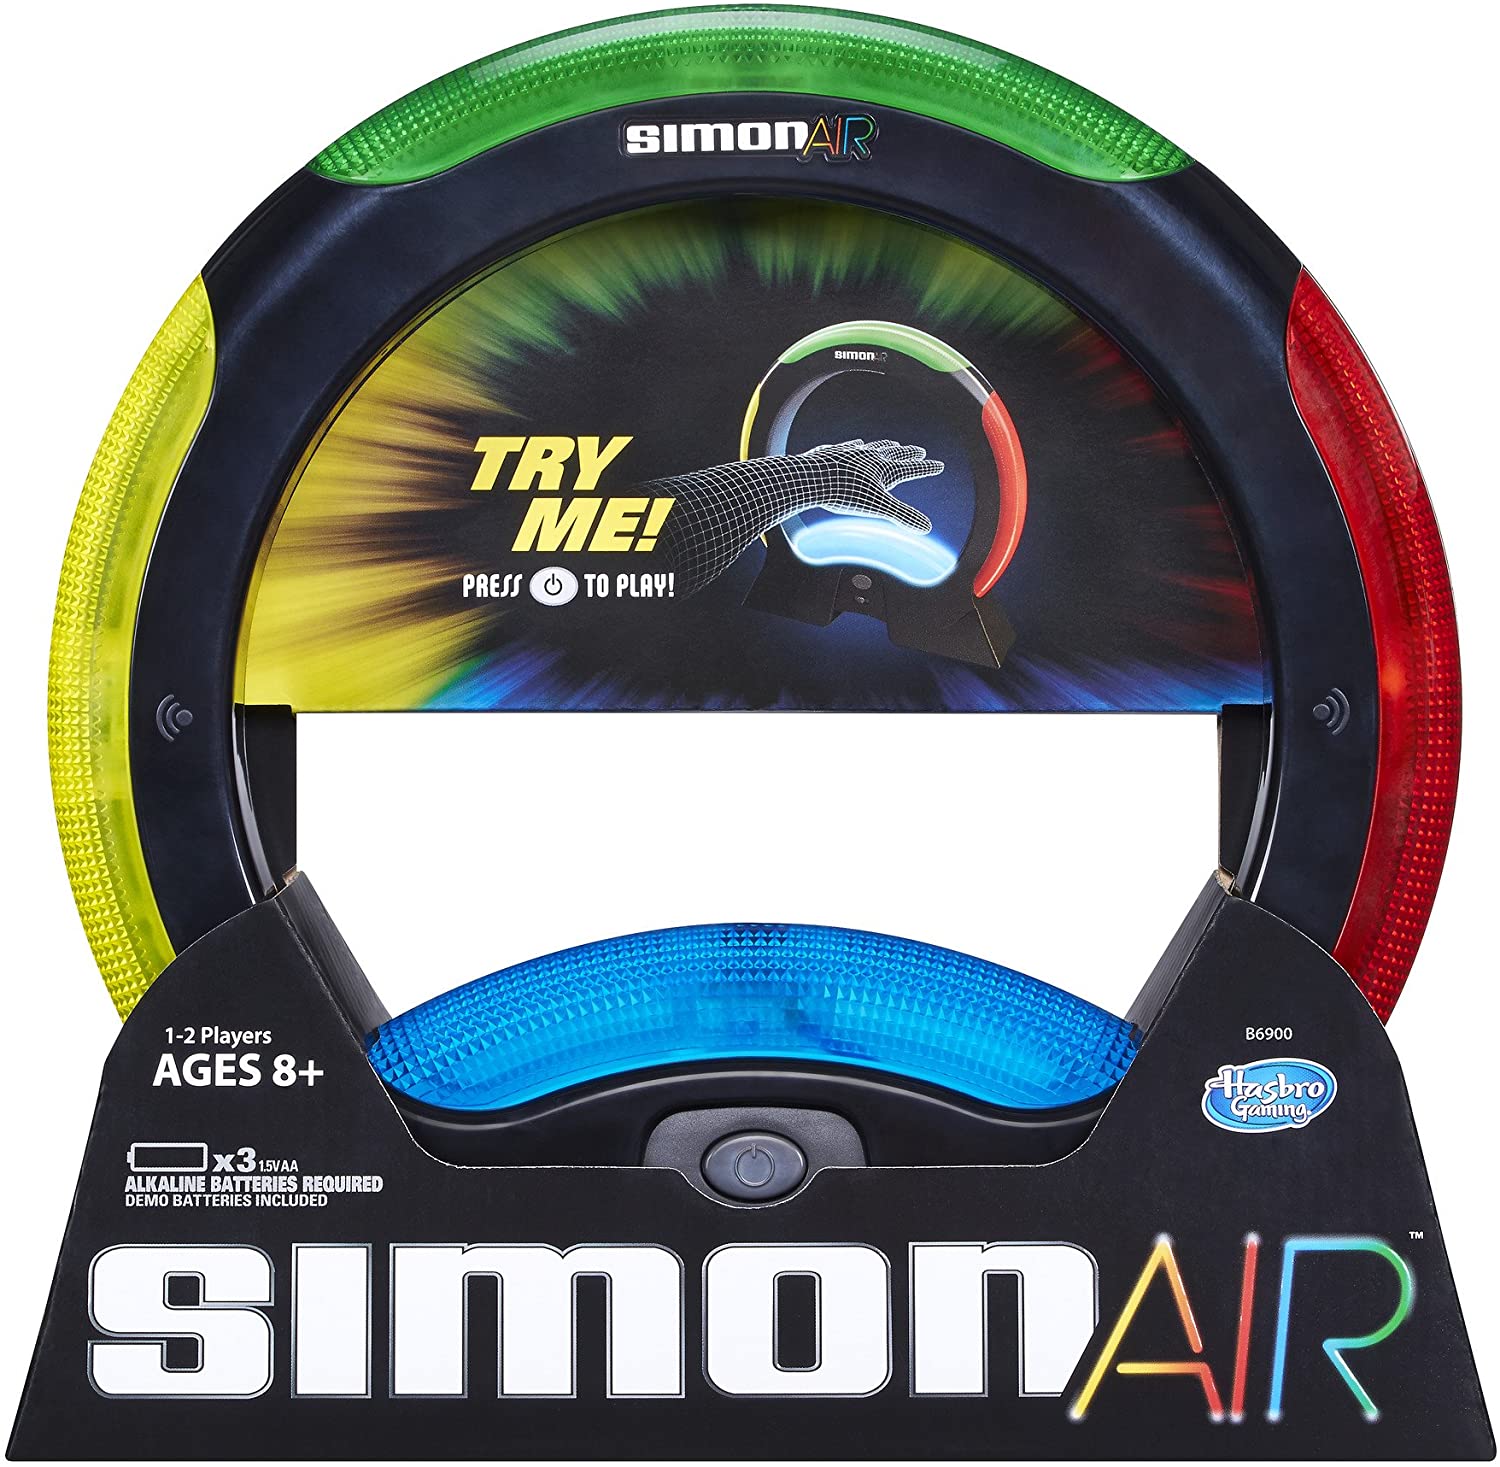 Simon Air game